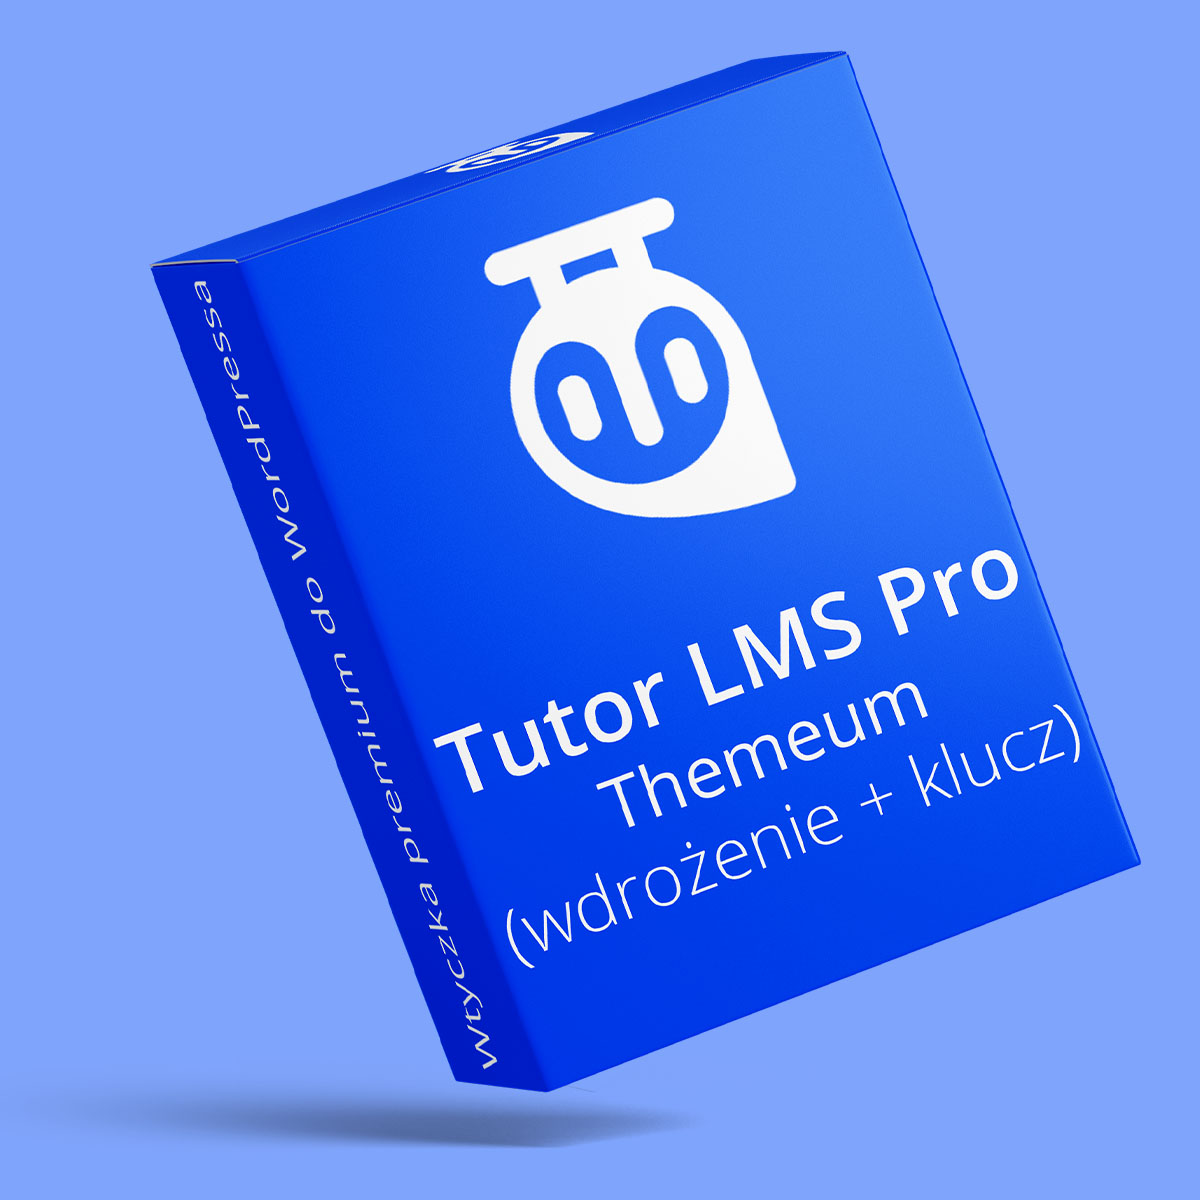 Wdrożenie wtyczki Tutor LMS Pro od Themeum